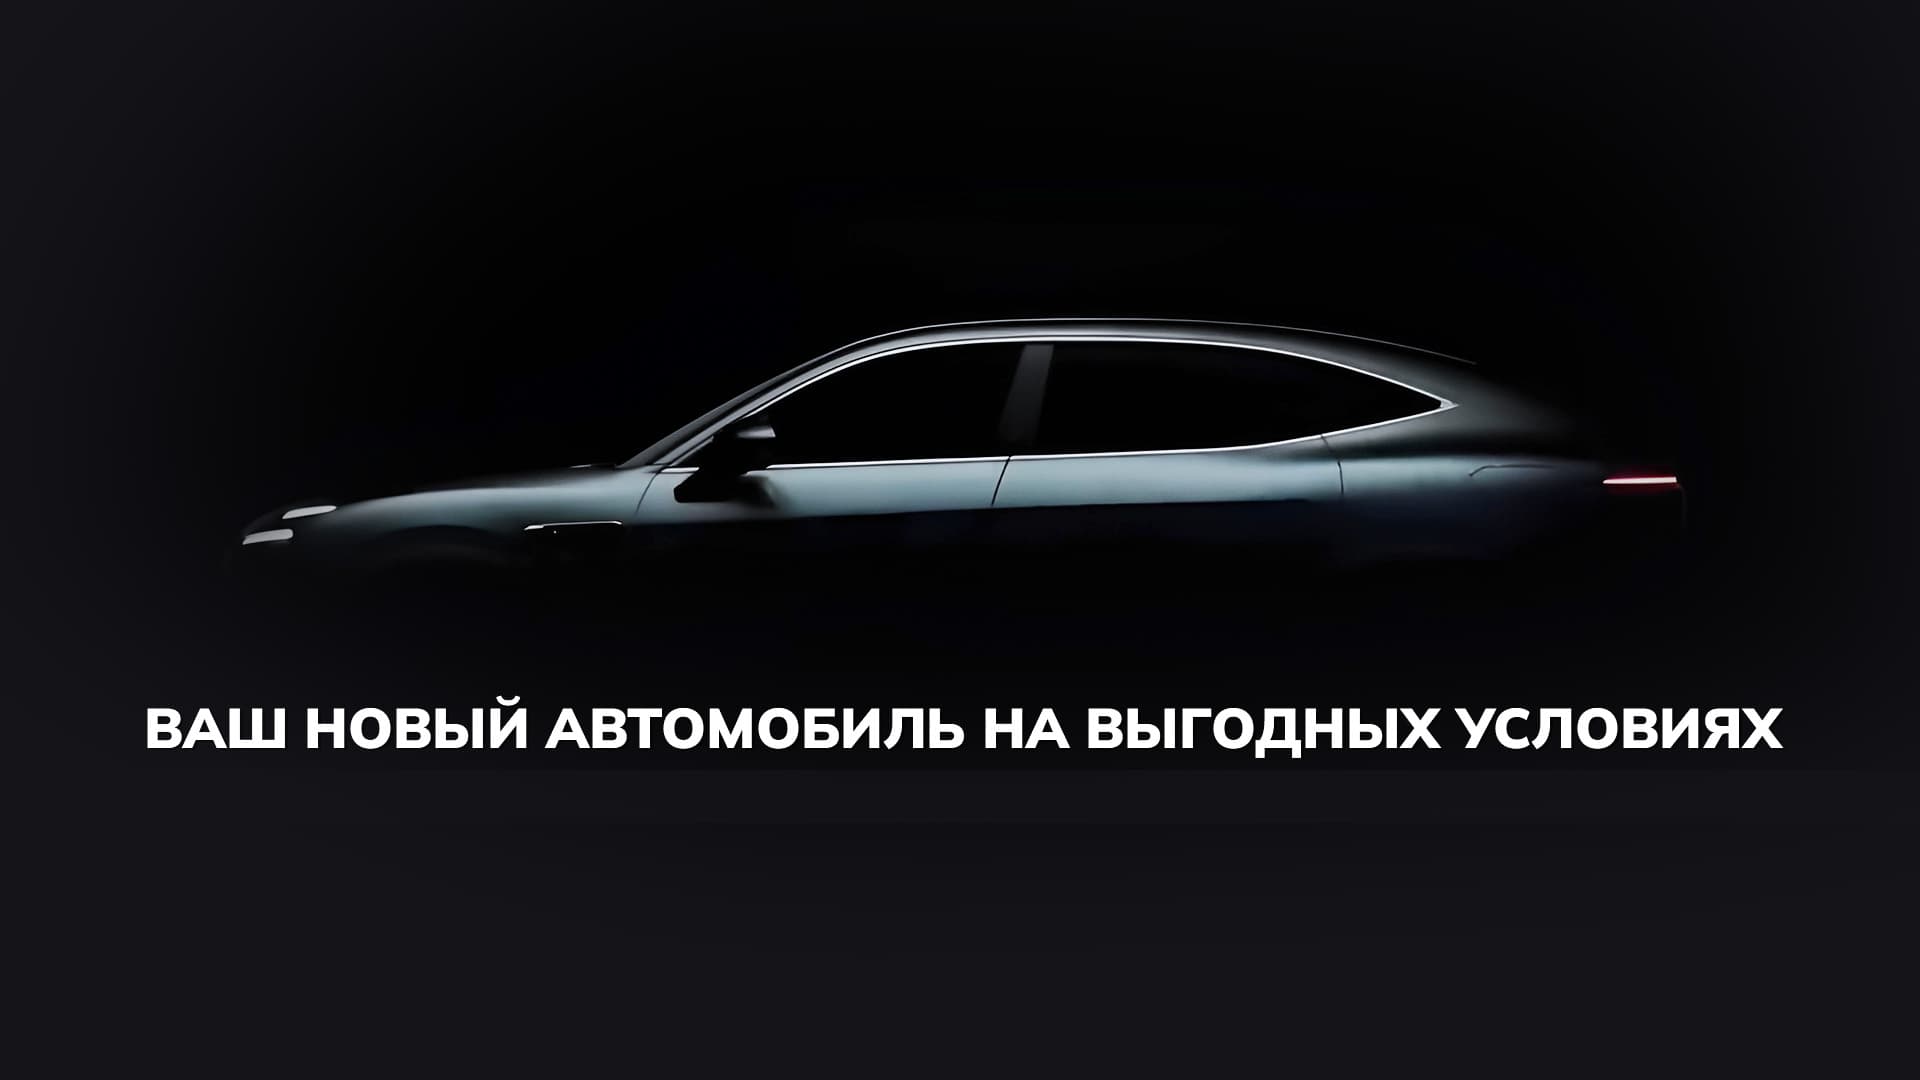 Специальные кредитные программы «Совкомбанка» теперь доступны для покупки автомобилей сети «АГР»